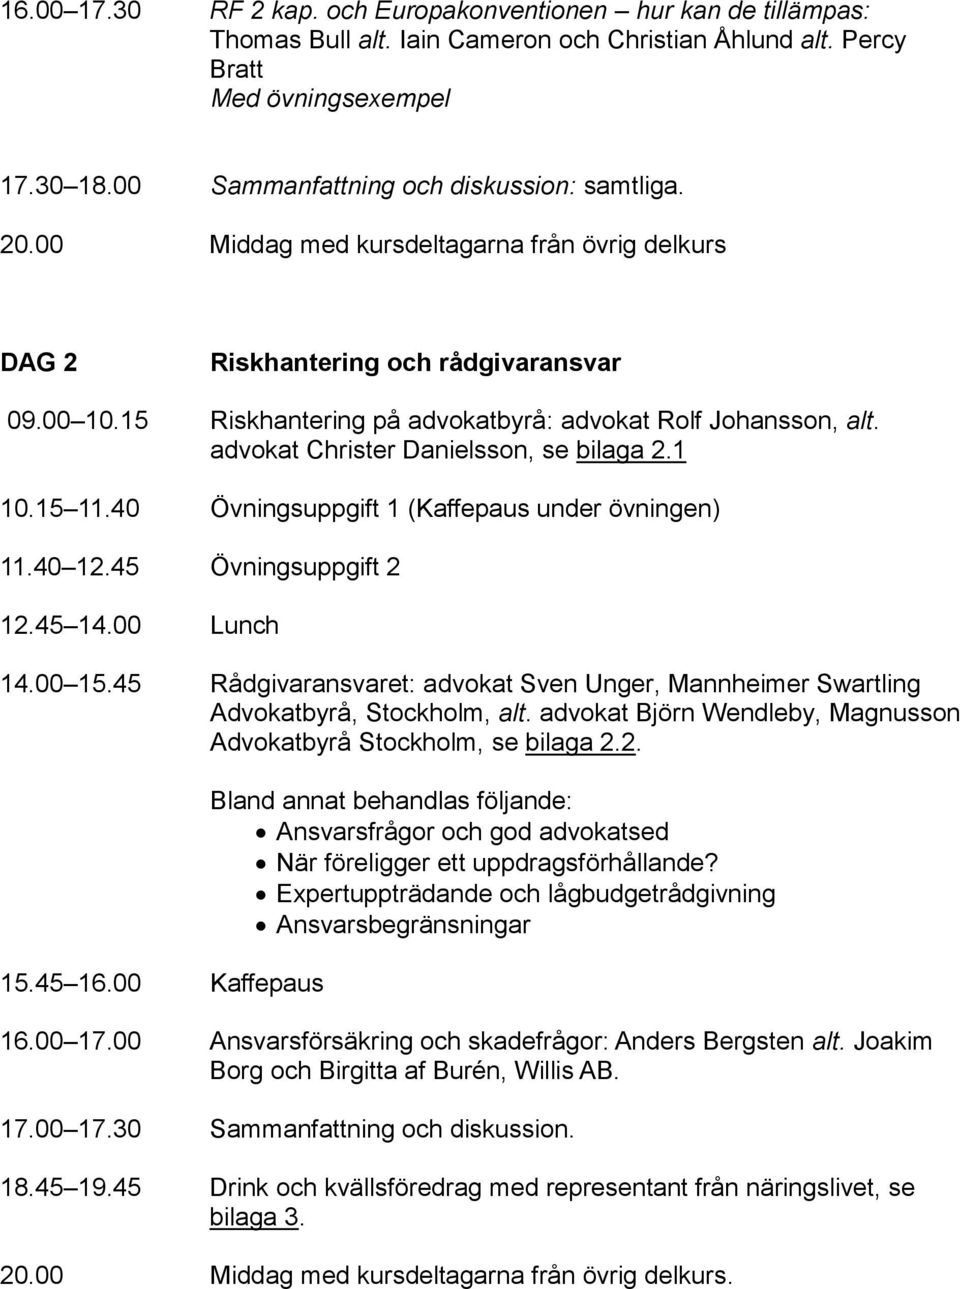 15 Riskhantering på advokatbyrå: advokat Rolf Johansson, alt. advokat Christer Danielsson, se bilaga 2.1 10.15 11.40 Övningsuppgift 1 (Kaffepaus under övningen) 11.40 12.45 Övningsuppgift 2 12.45 14.